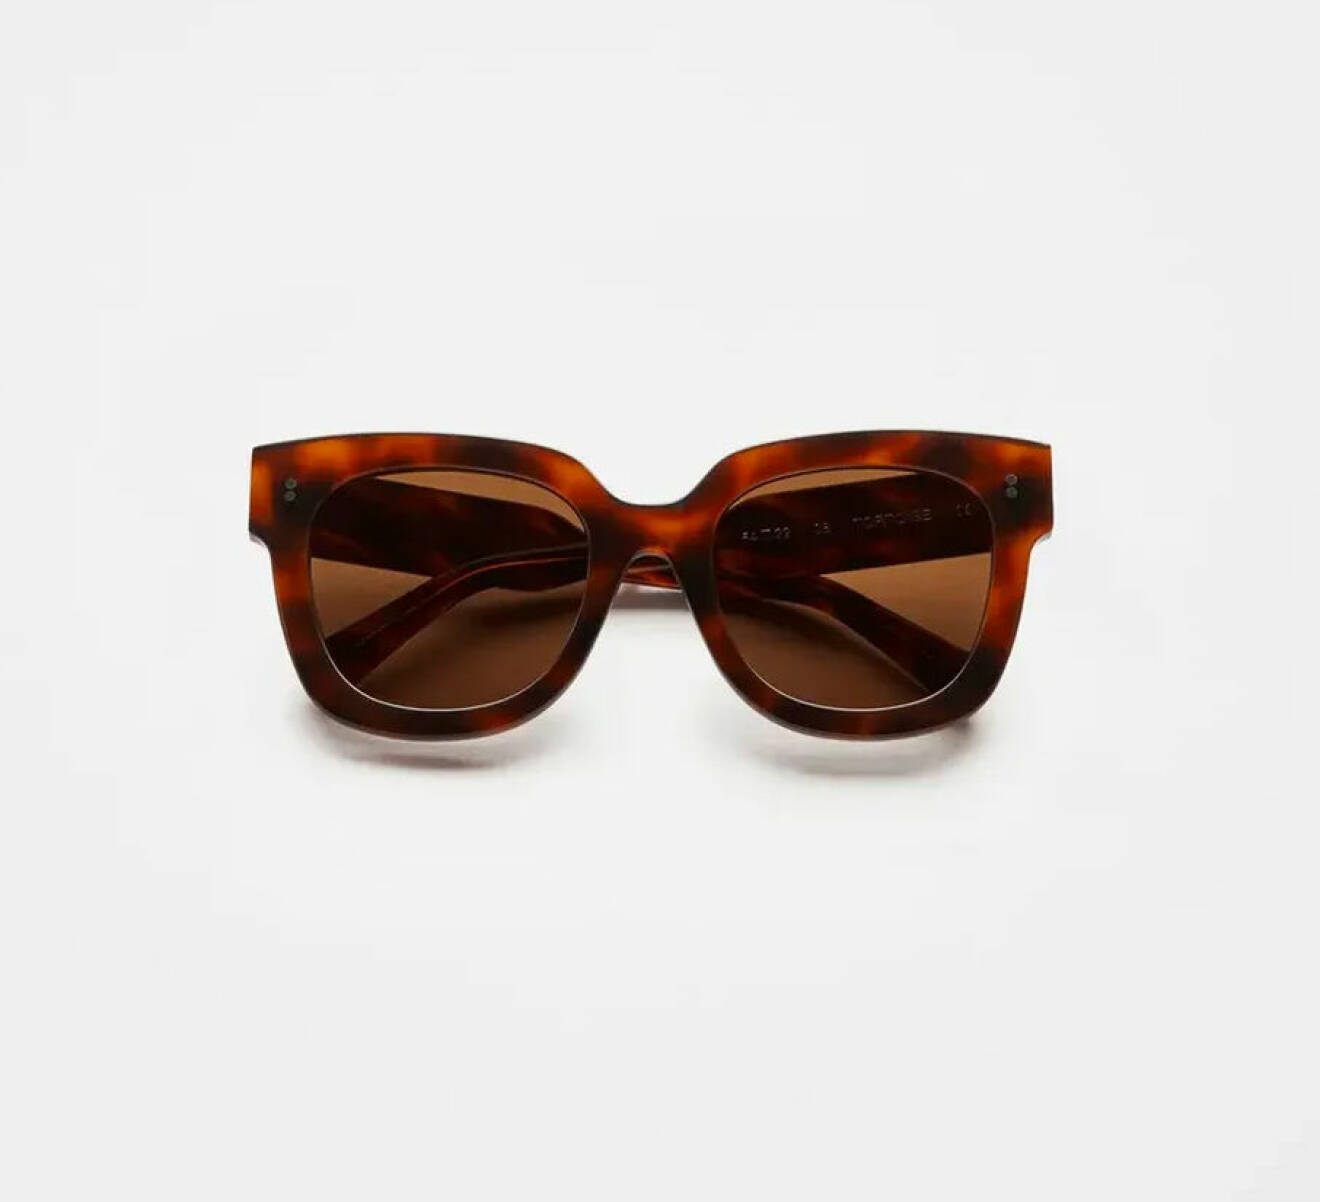 Bruna stora solglasögon från Chimi Eyewear.